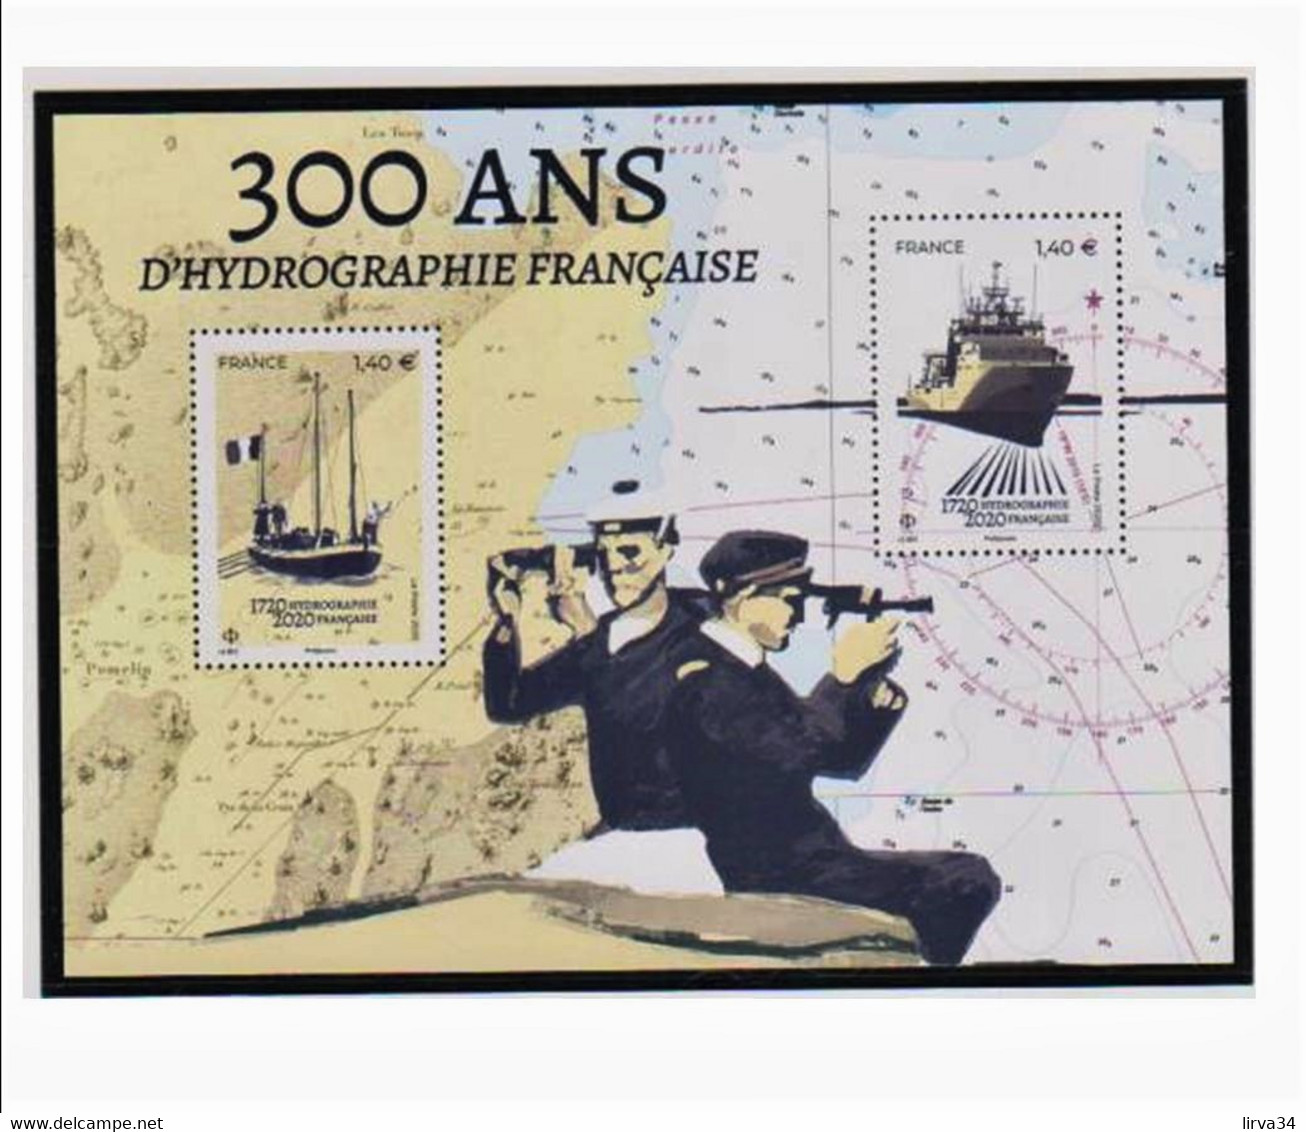 PROPO ! 5 POCHETTES HAWID DOUBLE SOUDURE- SPÉCIAL BLOCS DE FRANCE 143 X 105 - 2 SCANS - Postzegelhoes